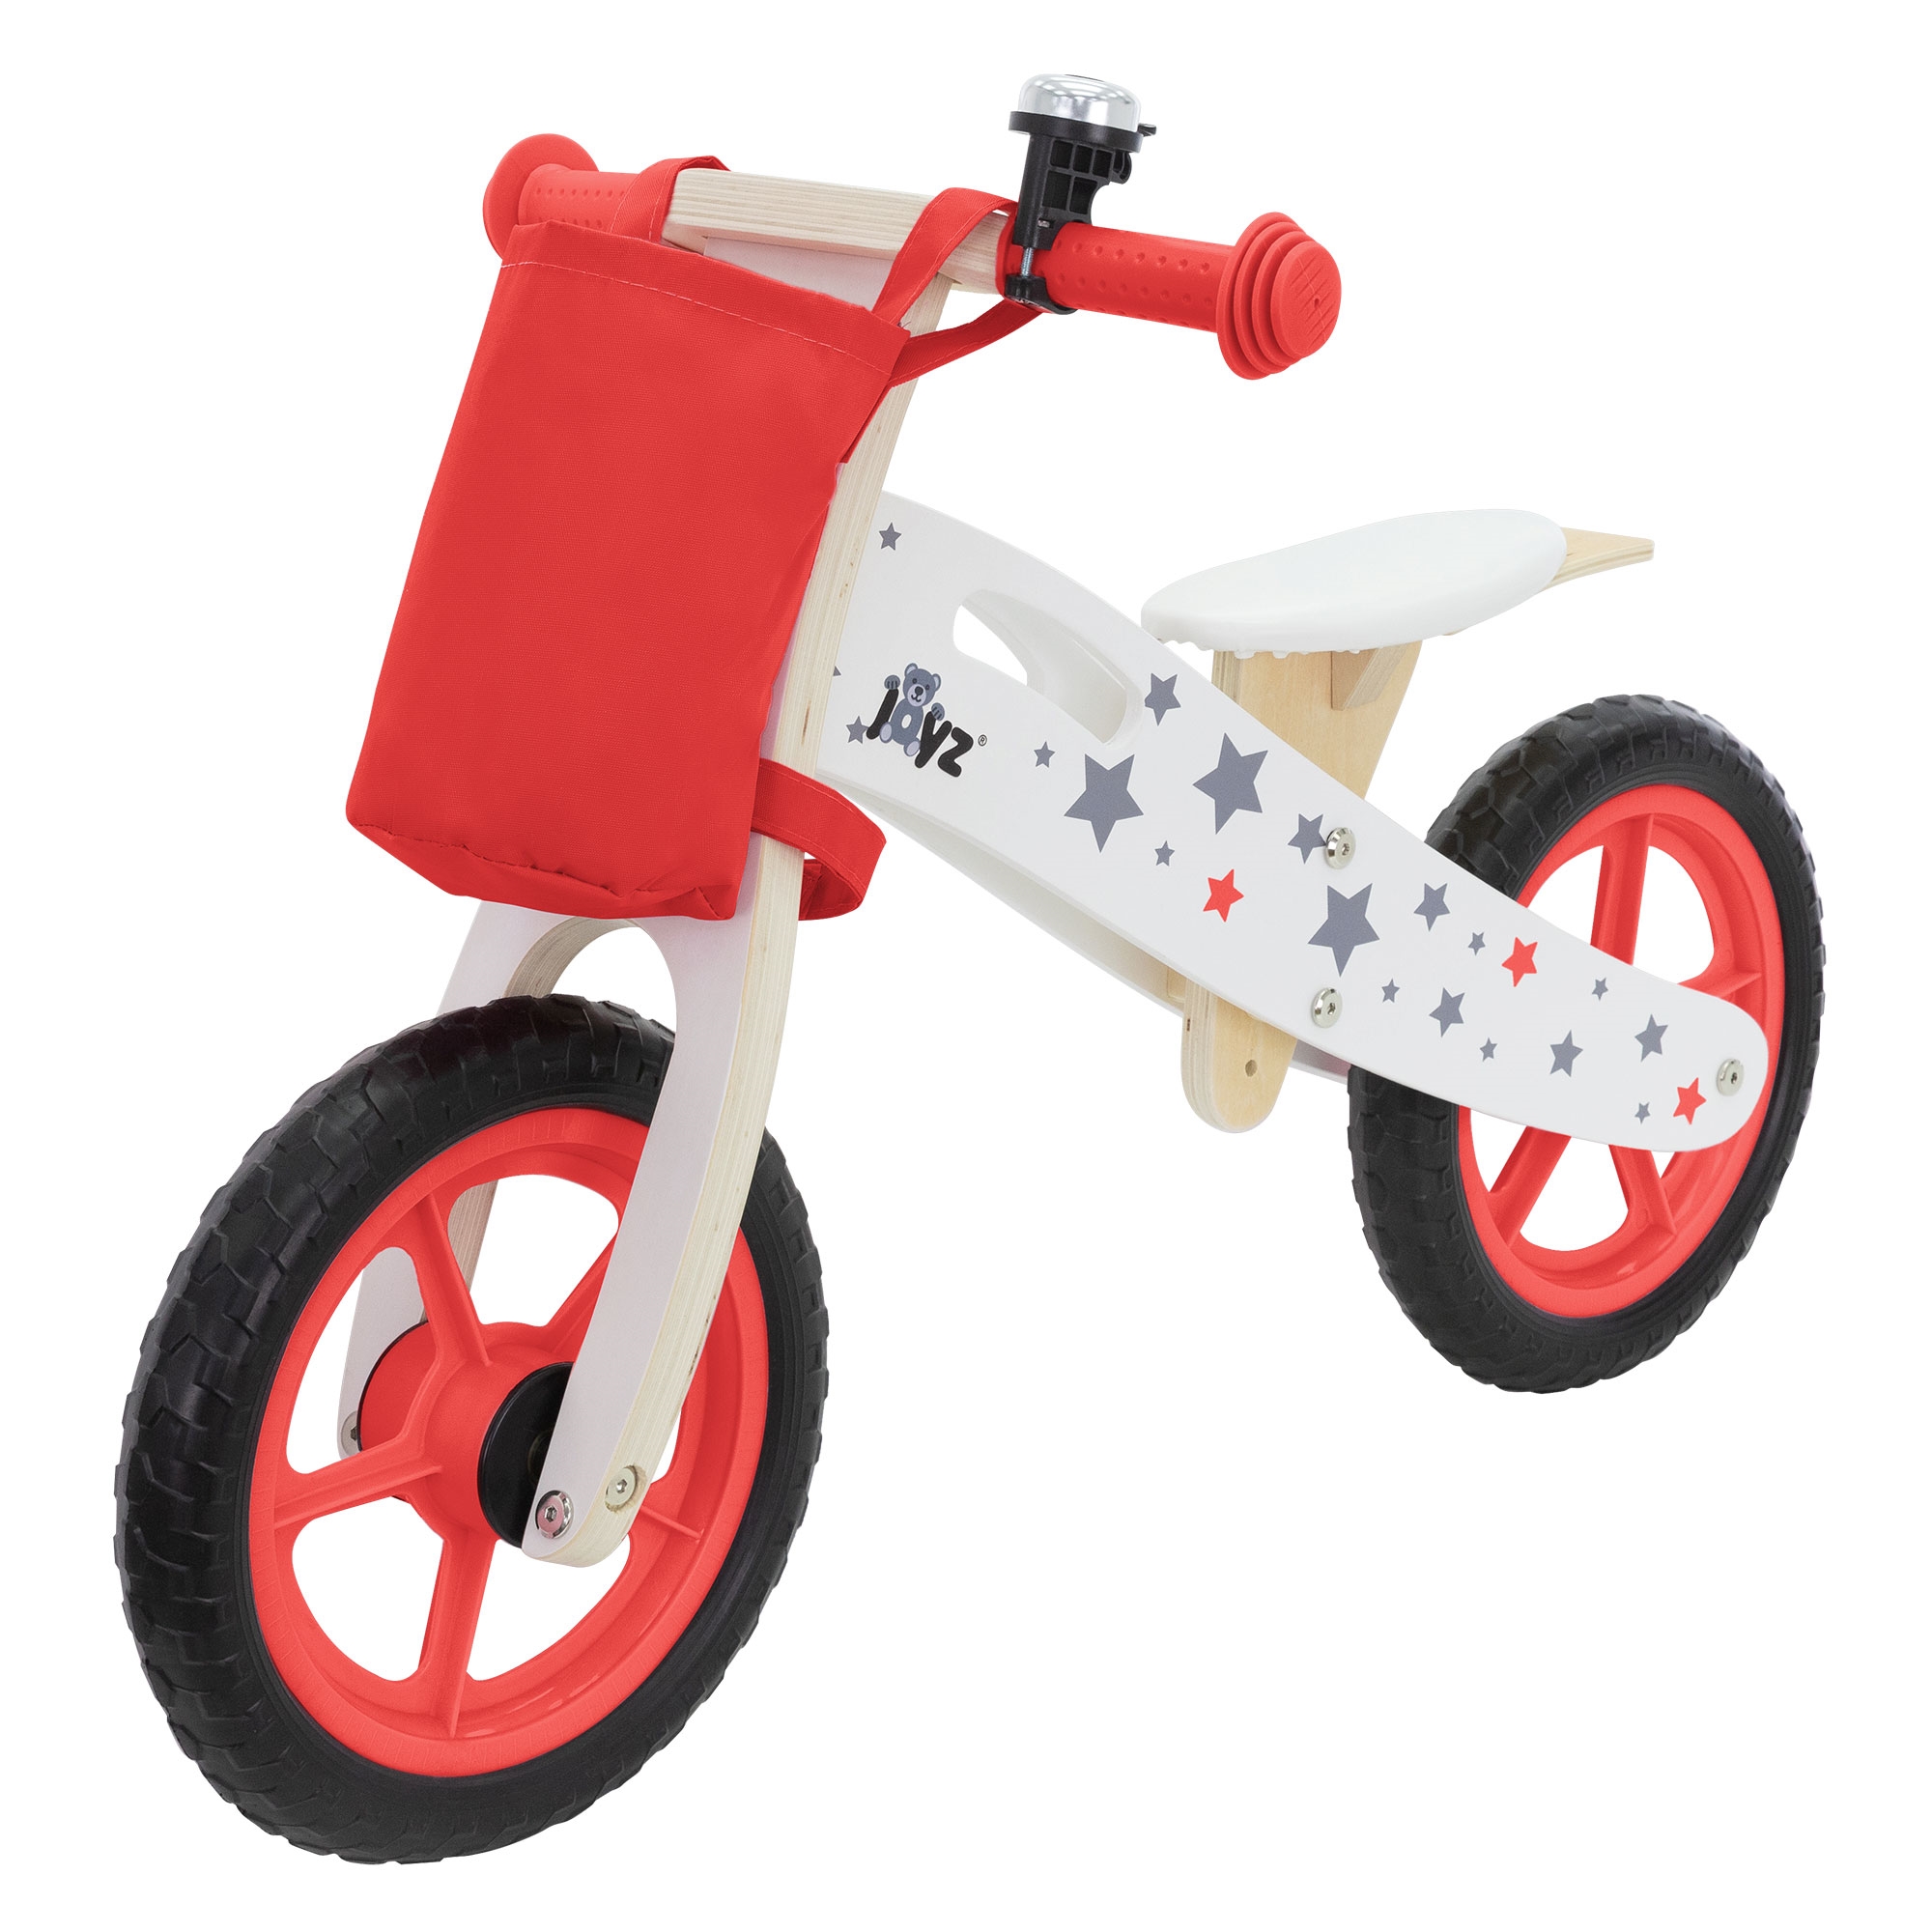 Bicicleta De Madera Joyz Para Niños A Partir De 2 Años Con Asiento Ajustable - rojo - 